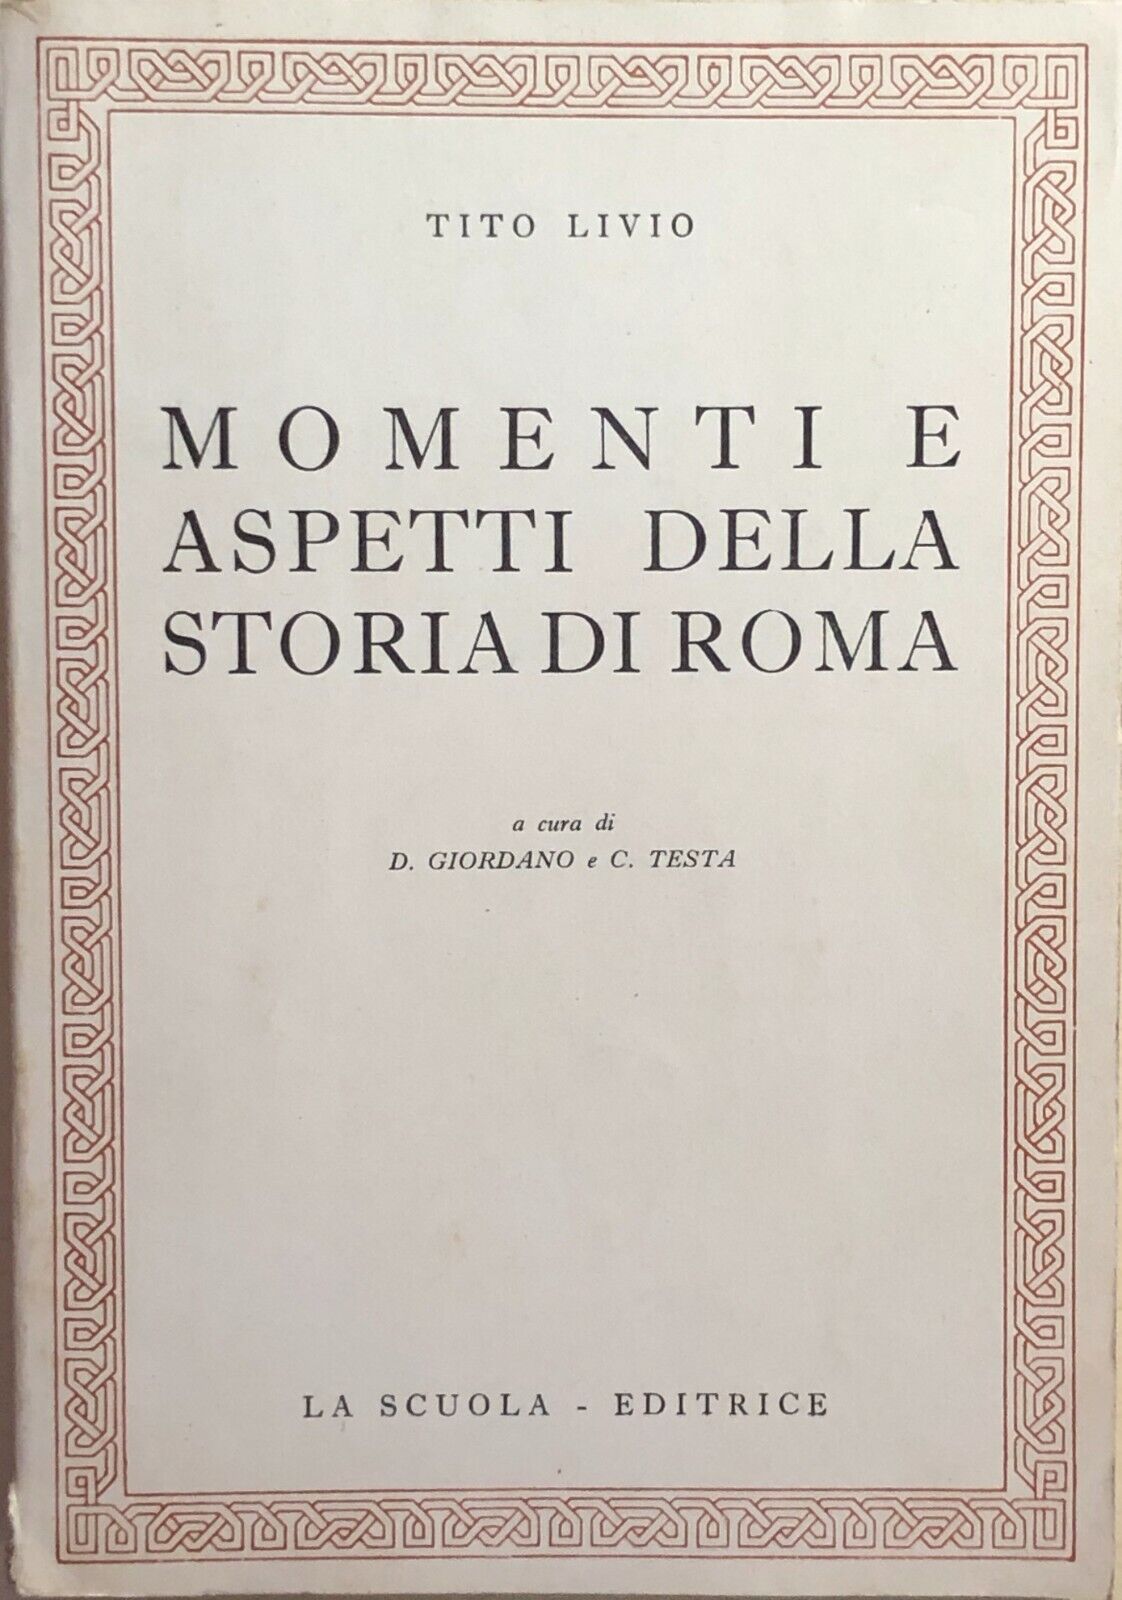 Momenti e aspetti della storia di Roma di Tito Livio, 1968, La Scuola editrice